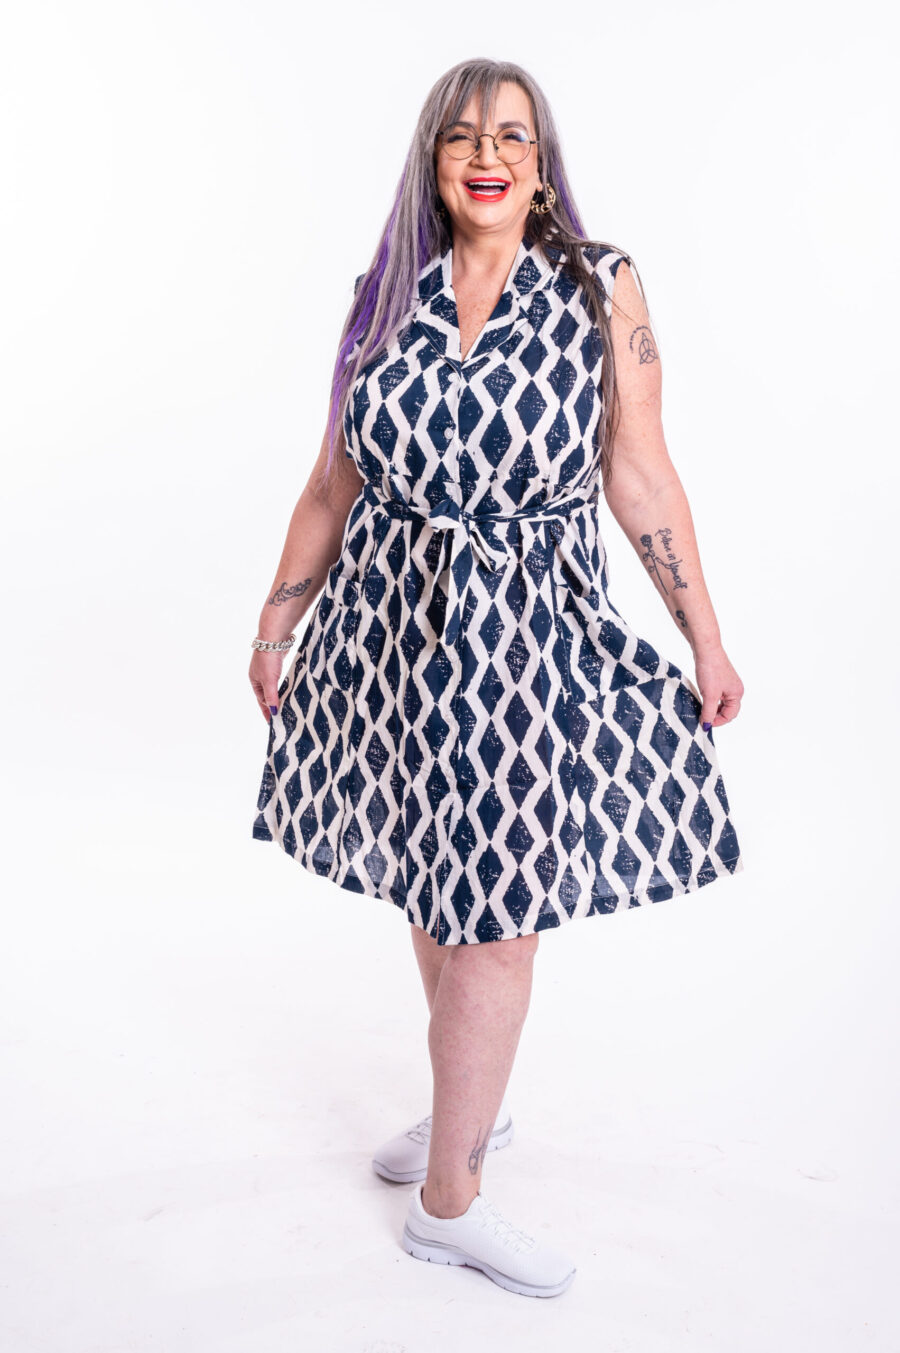 שמלת עופר | שמלה בעיצוב ייחודי – שמלת מידי צבעונית עם הדפס כחול מעויינים